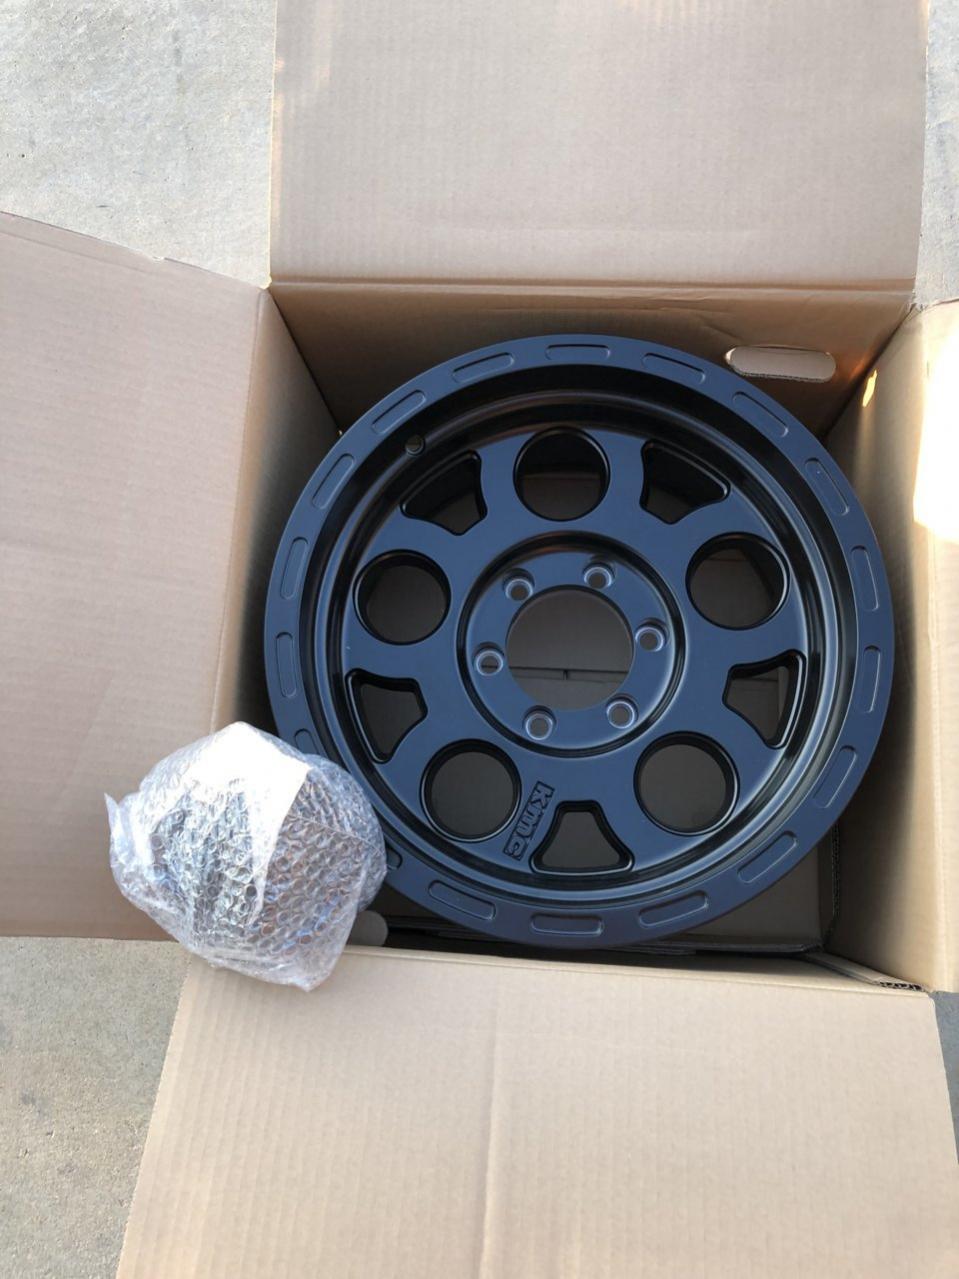 KMC wheels and tire - socal-e90d17d6-4ccd-4774-a859-5a3e91c187ee-jpg